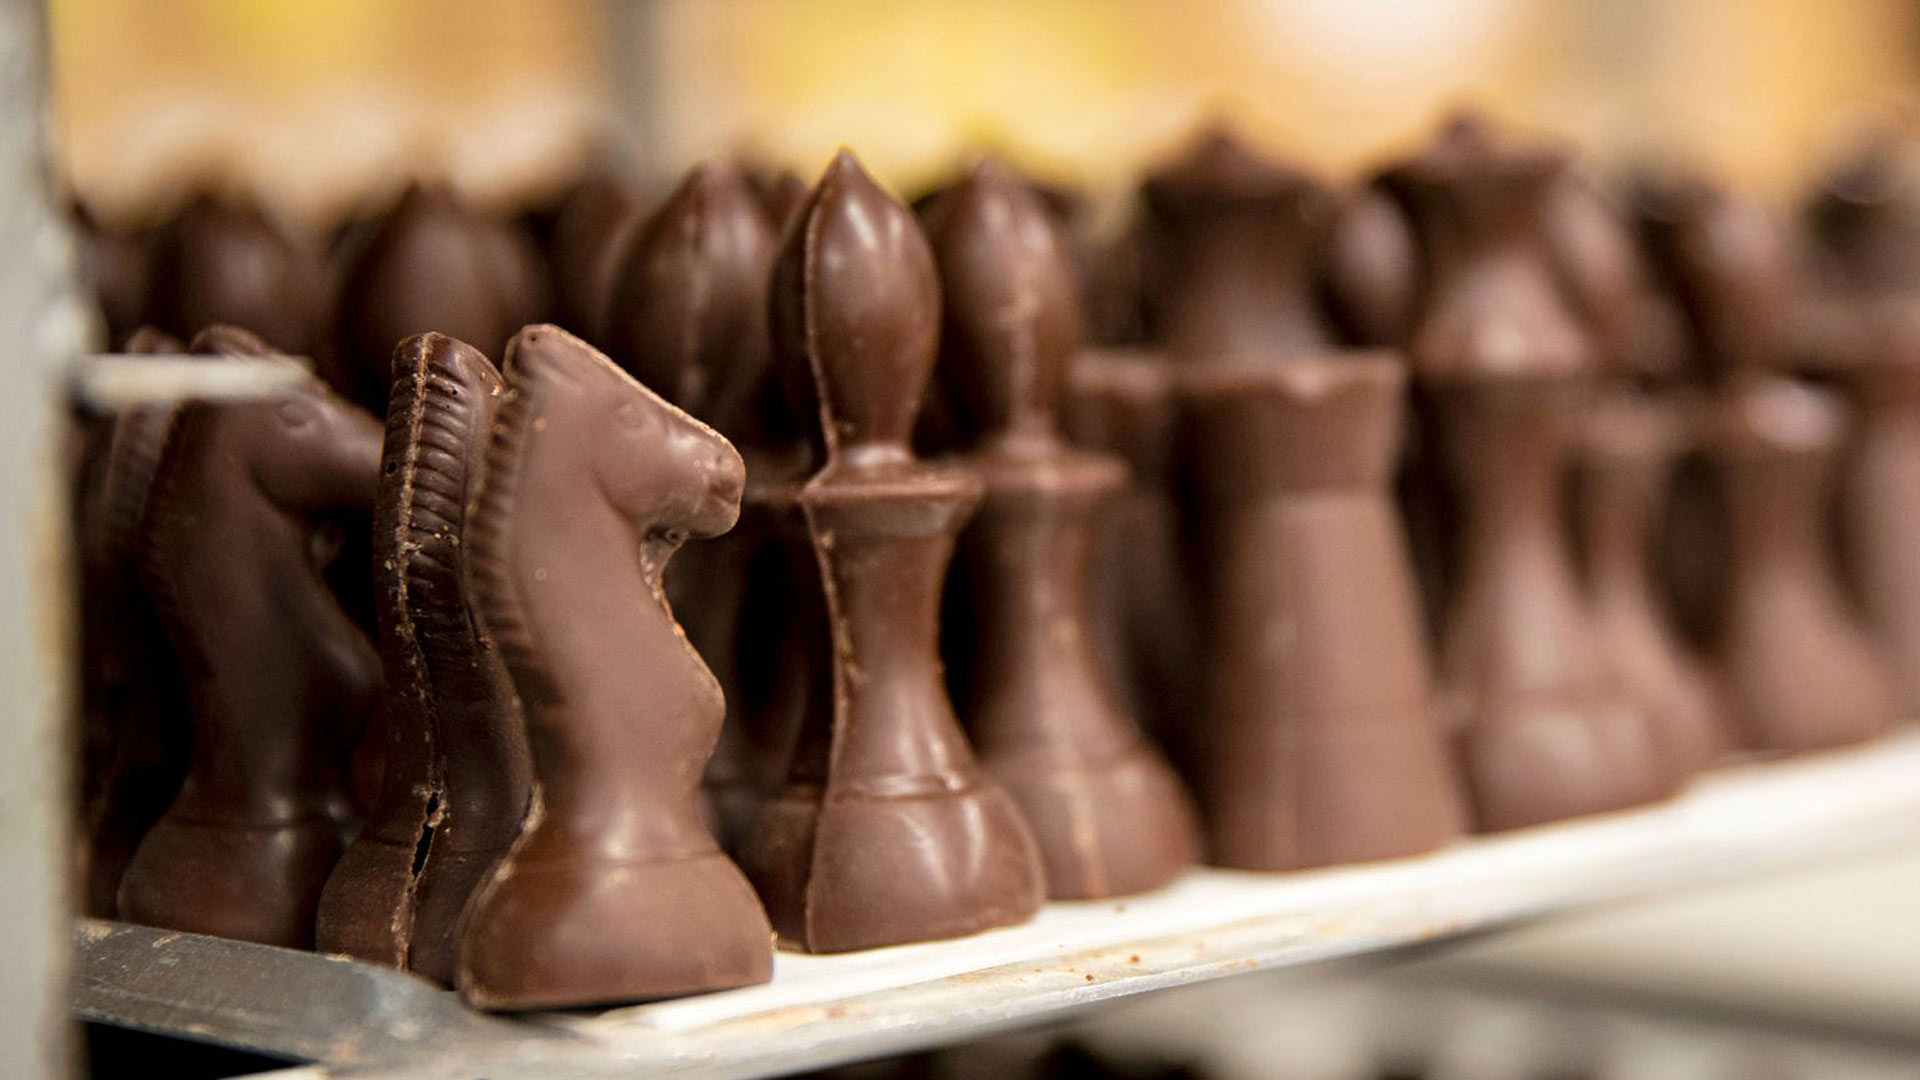 Suklaasta valmistetun shakkinappulan voi konkreettisesti syödä. Toisen pelaajan nappulat ovat tummaa suklaata, toisen valkosuklaata.